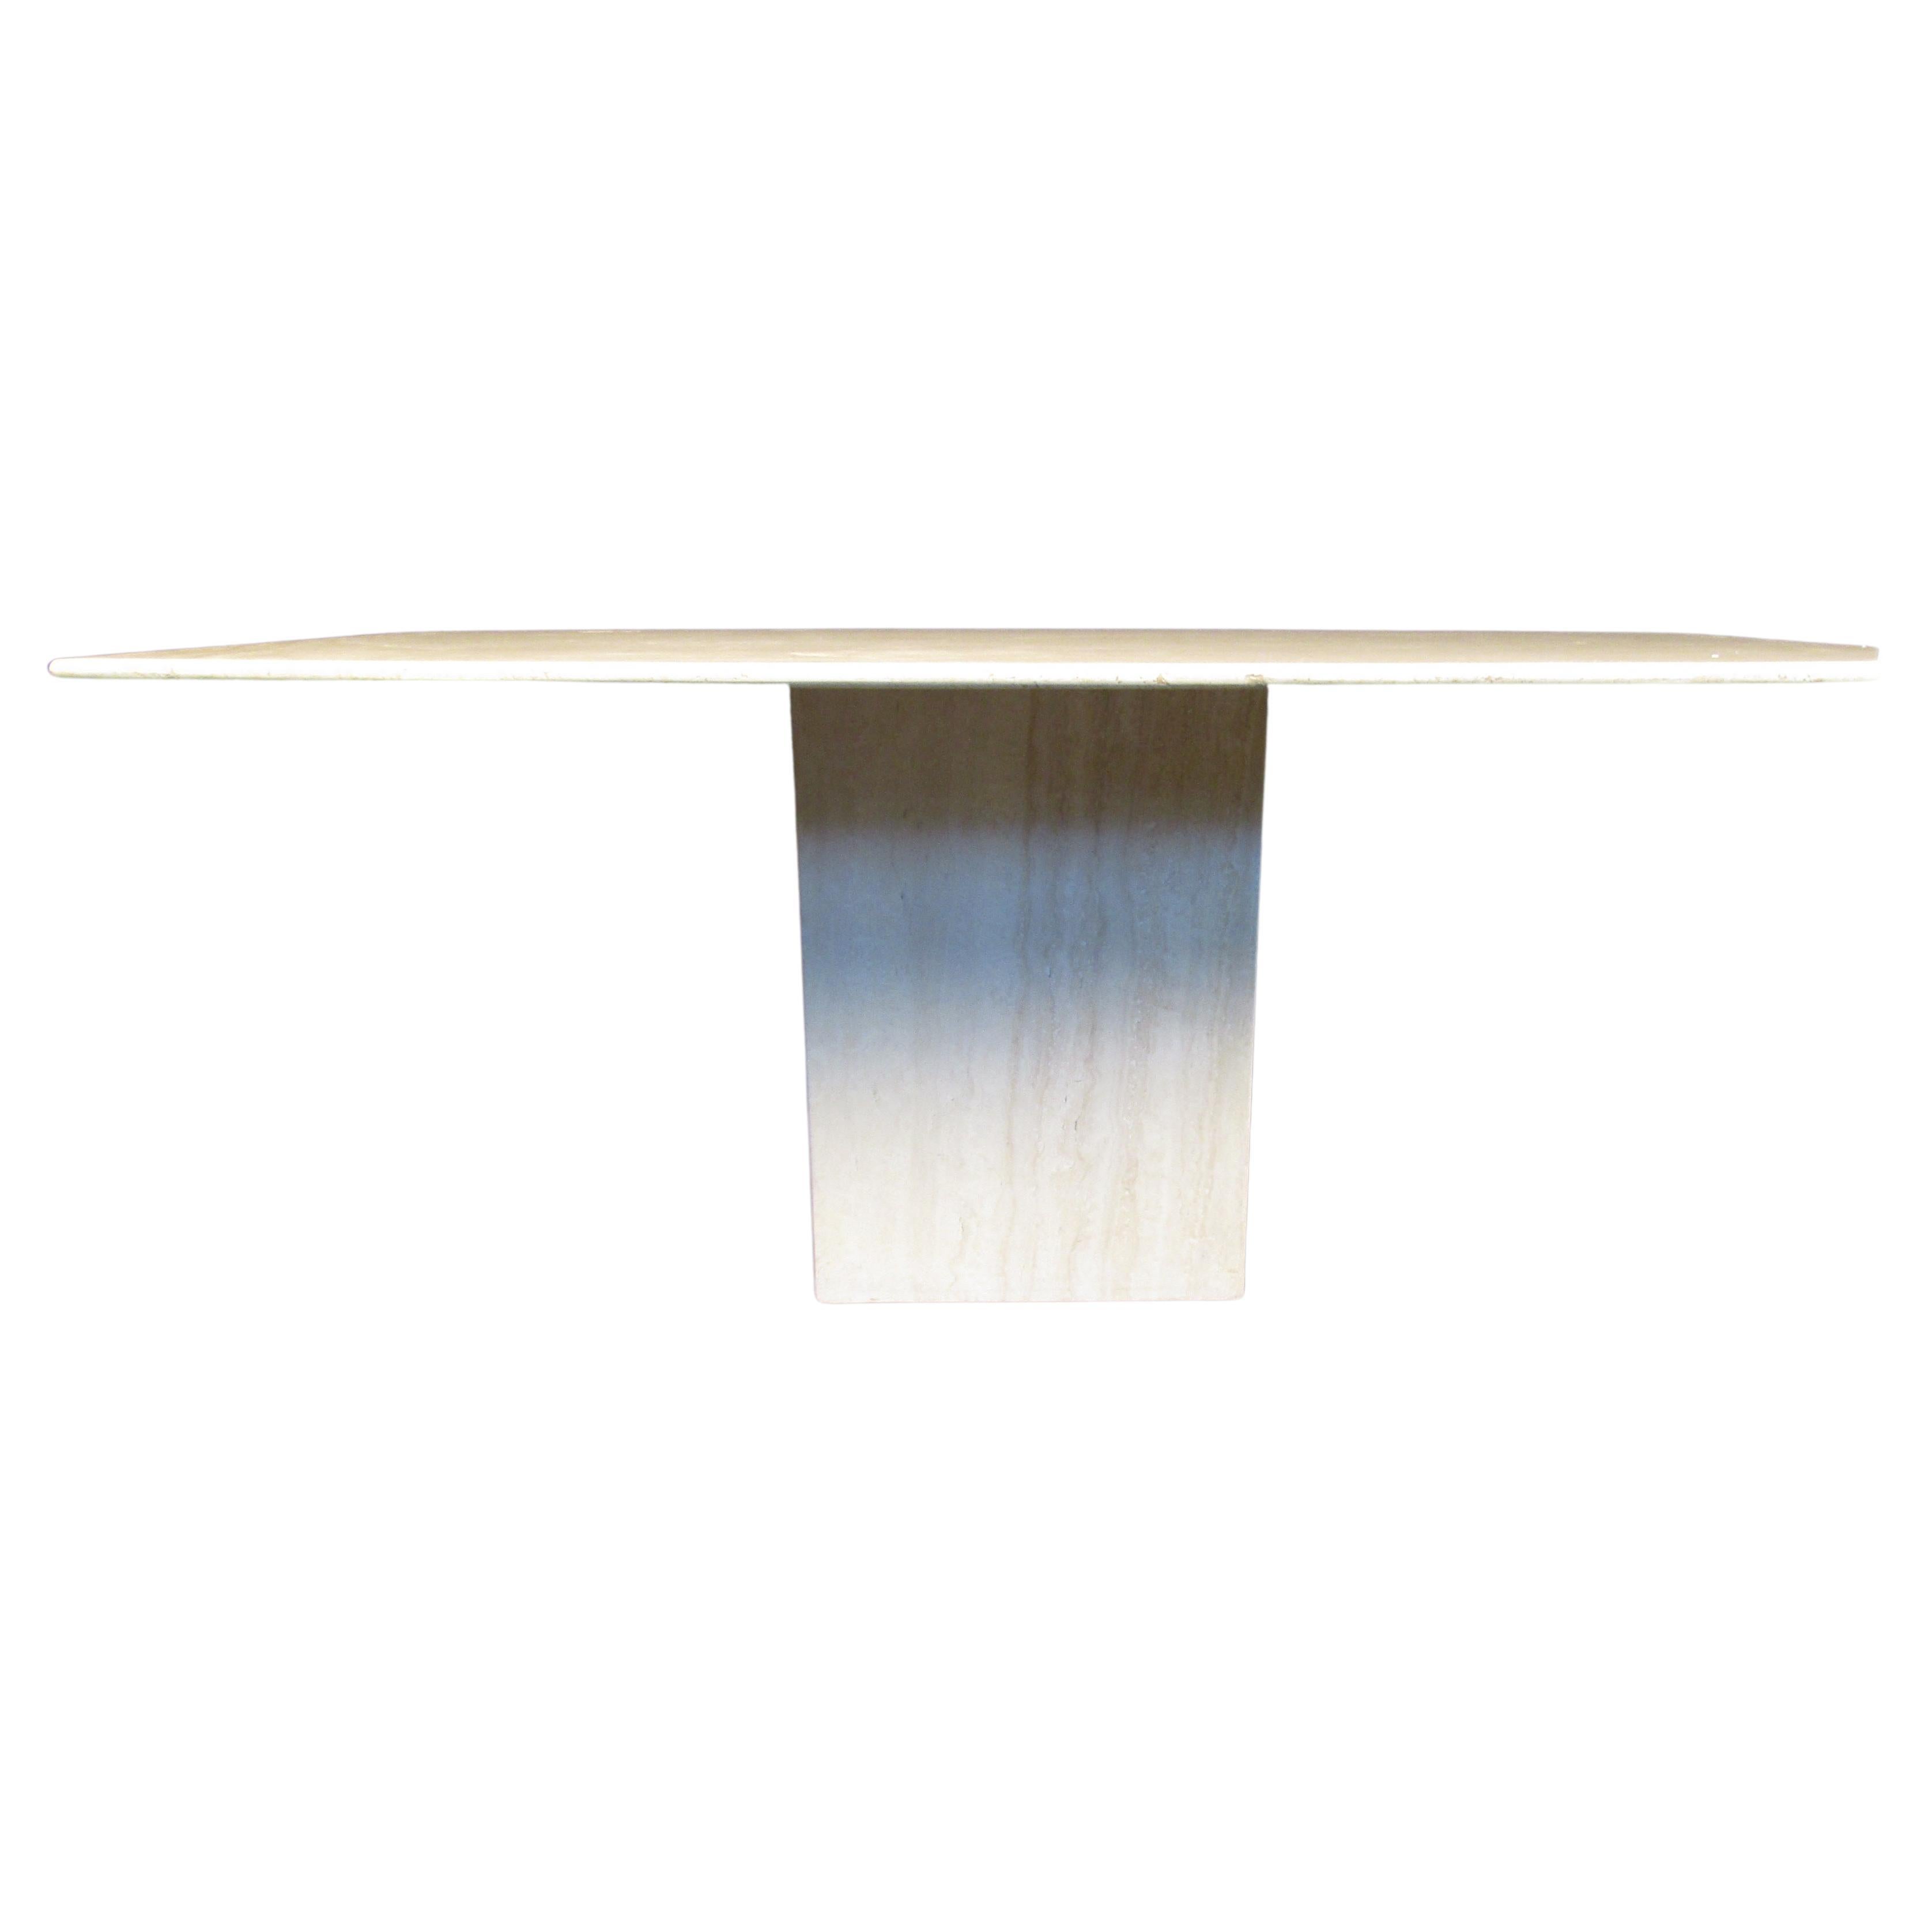 Cette table de salle à manger en marbre présente un plateau rectangulaire et une base entièrement en marbre. Conçue avec une influence italienne, cette pièce est étonnante et inhabituelle. Un ajout parfait à tout décor sophistiqué.

Veuillez